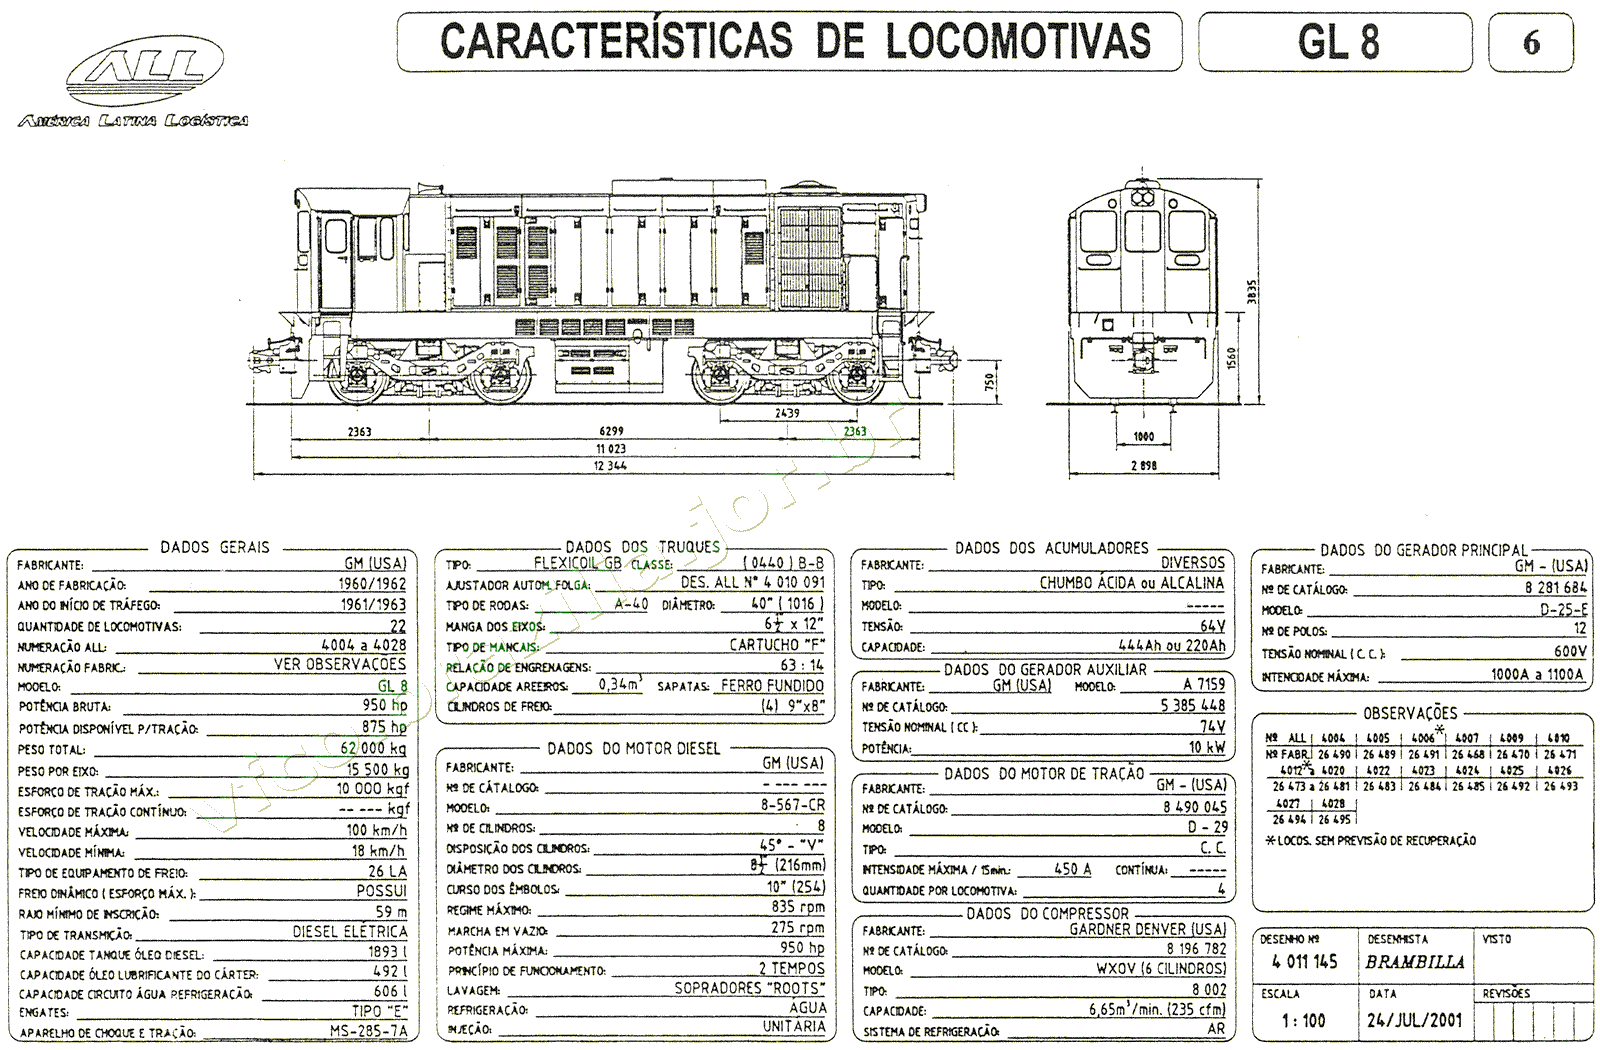 Desenho e características das Locomotivas GL8 nº 4004-4028 da ferrovia ALL